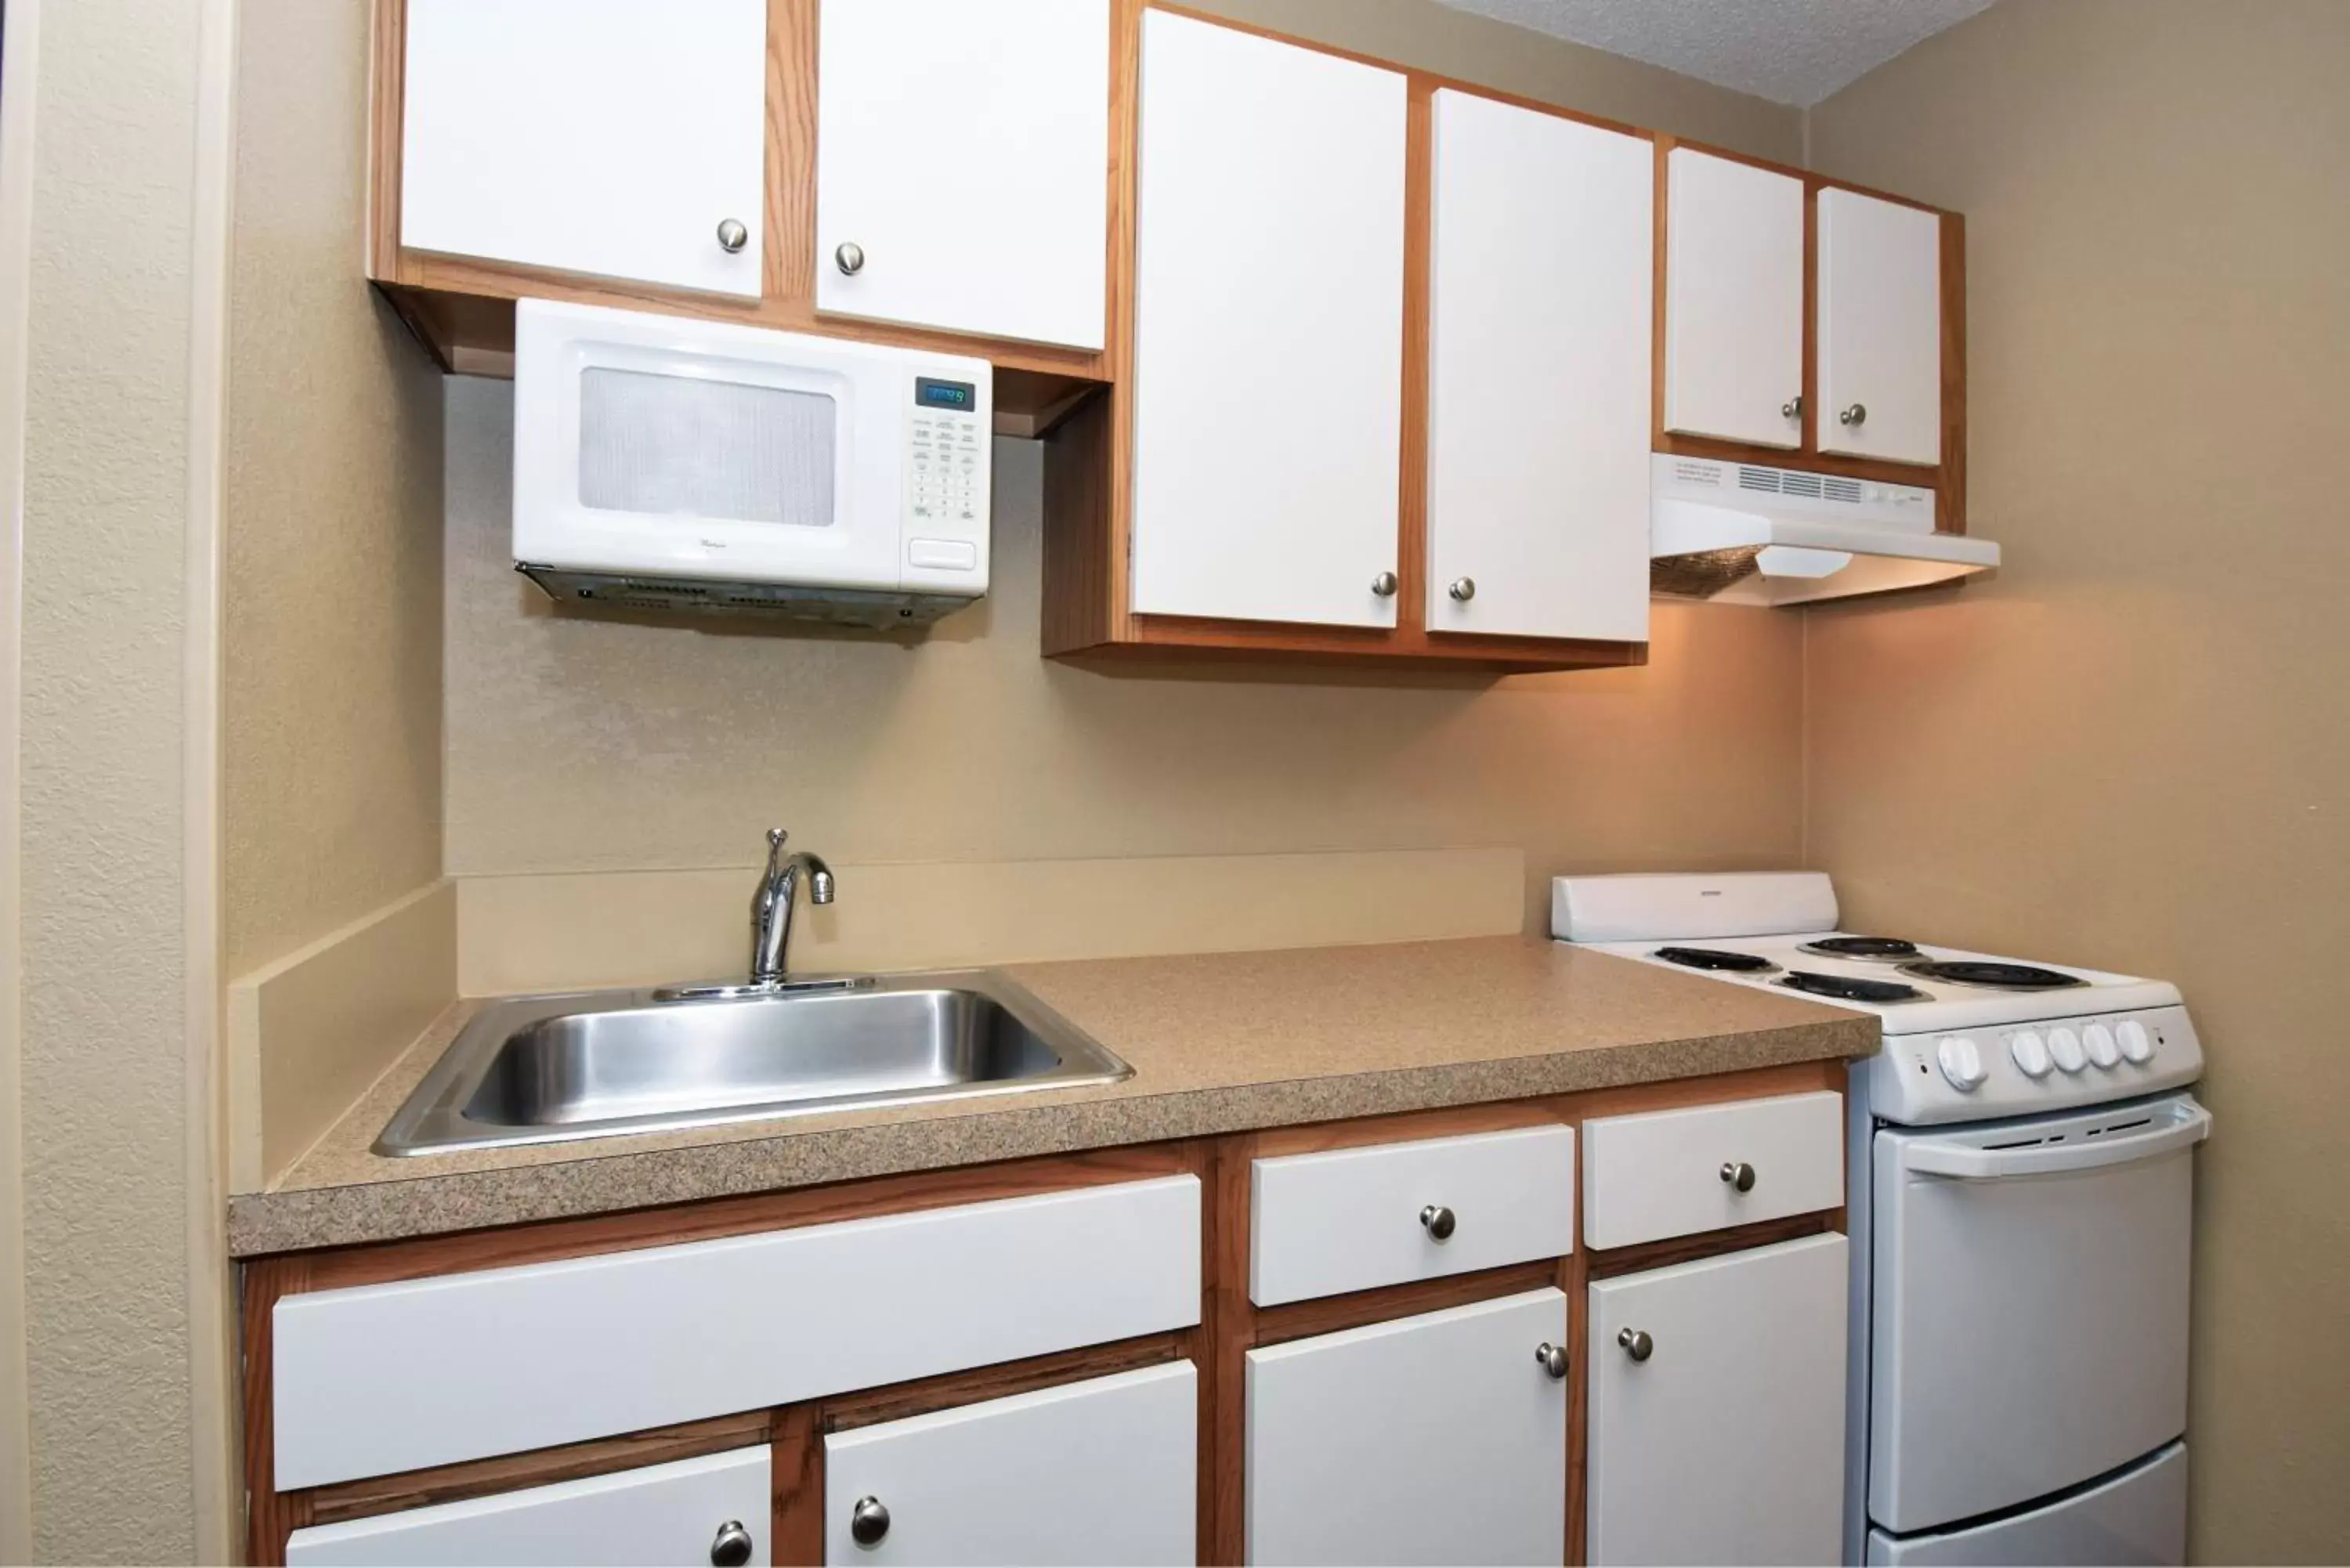 Kitchen or kitchenette, Kitchen/Kitchenette in Extended Stay America Suites - El Paso - West